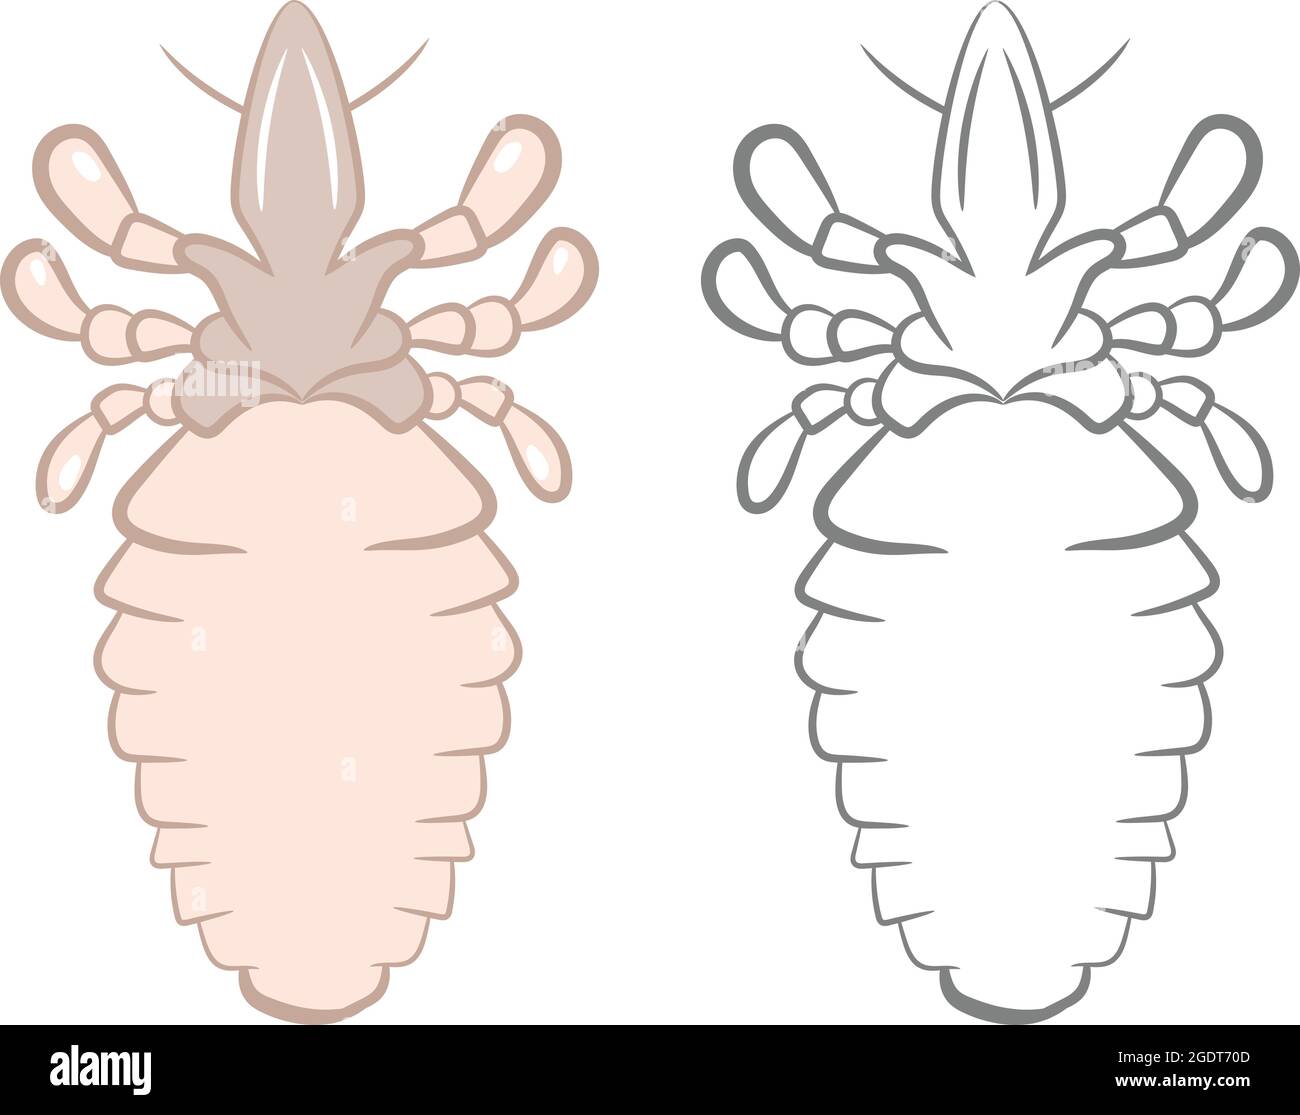 Illustrazione realistica di dice o Tick Insect. Isolato su sfondo bianco. Insetti Bugs Worms Pest e Flies. Illustrazione Vettoriale